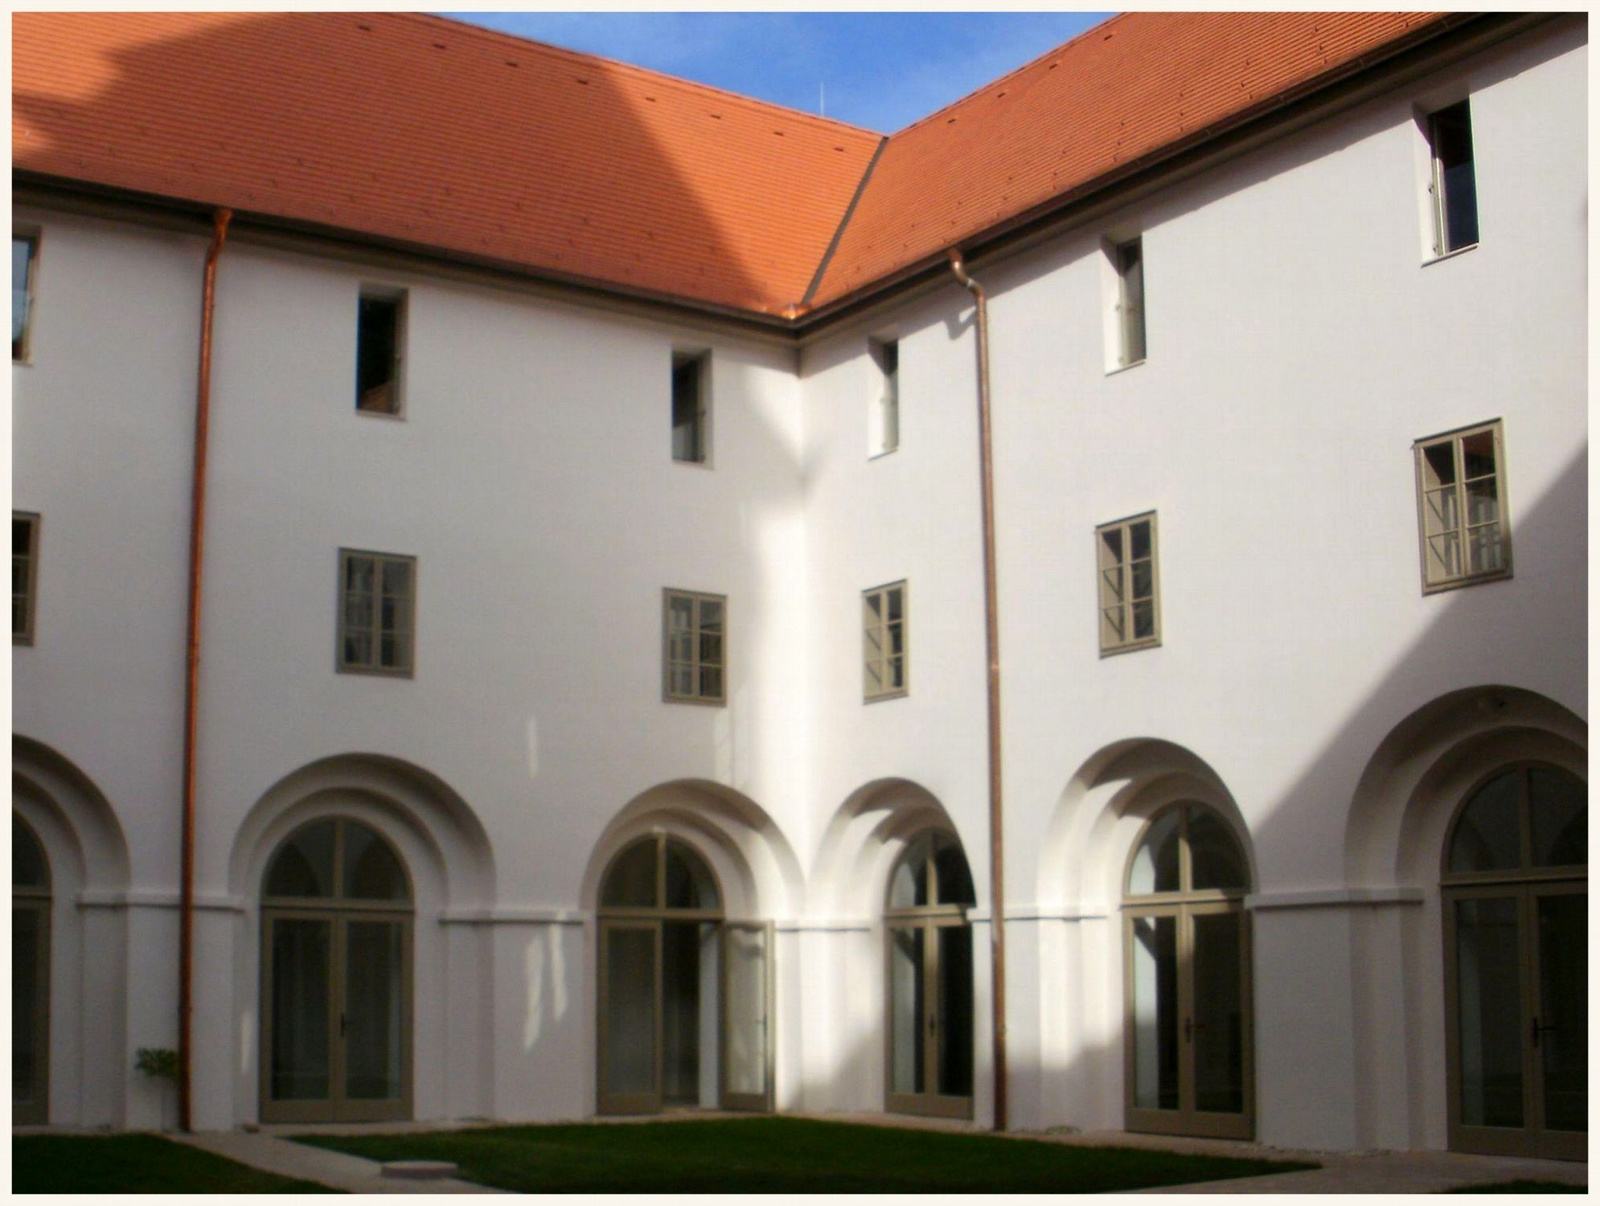 Sopronbánfalva - Pálos kolostor udvara